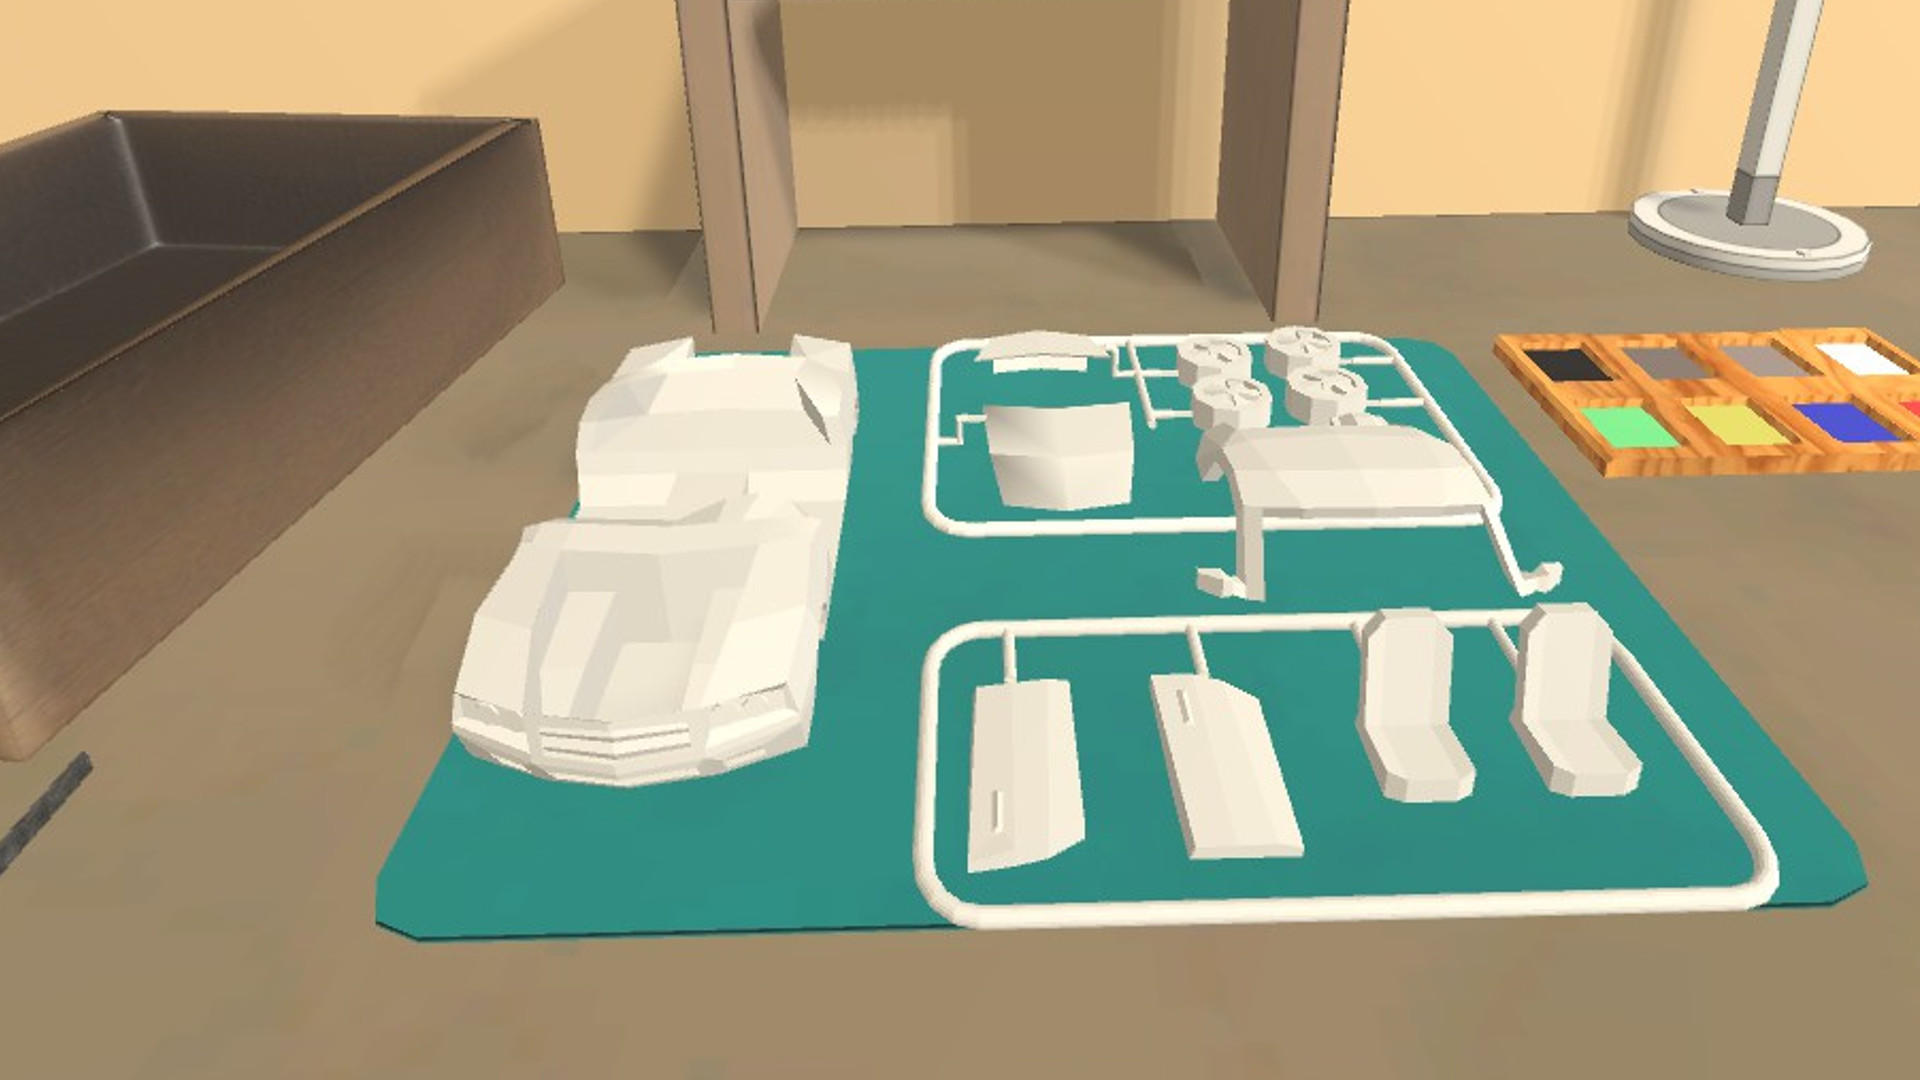 Model Kit Simulator VR screenshot